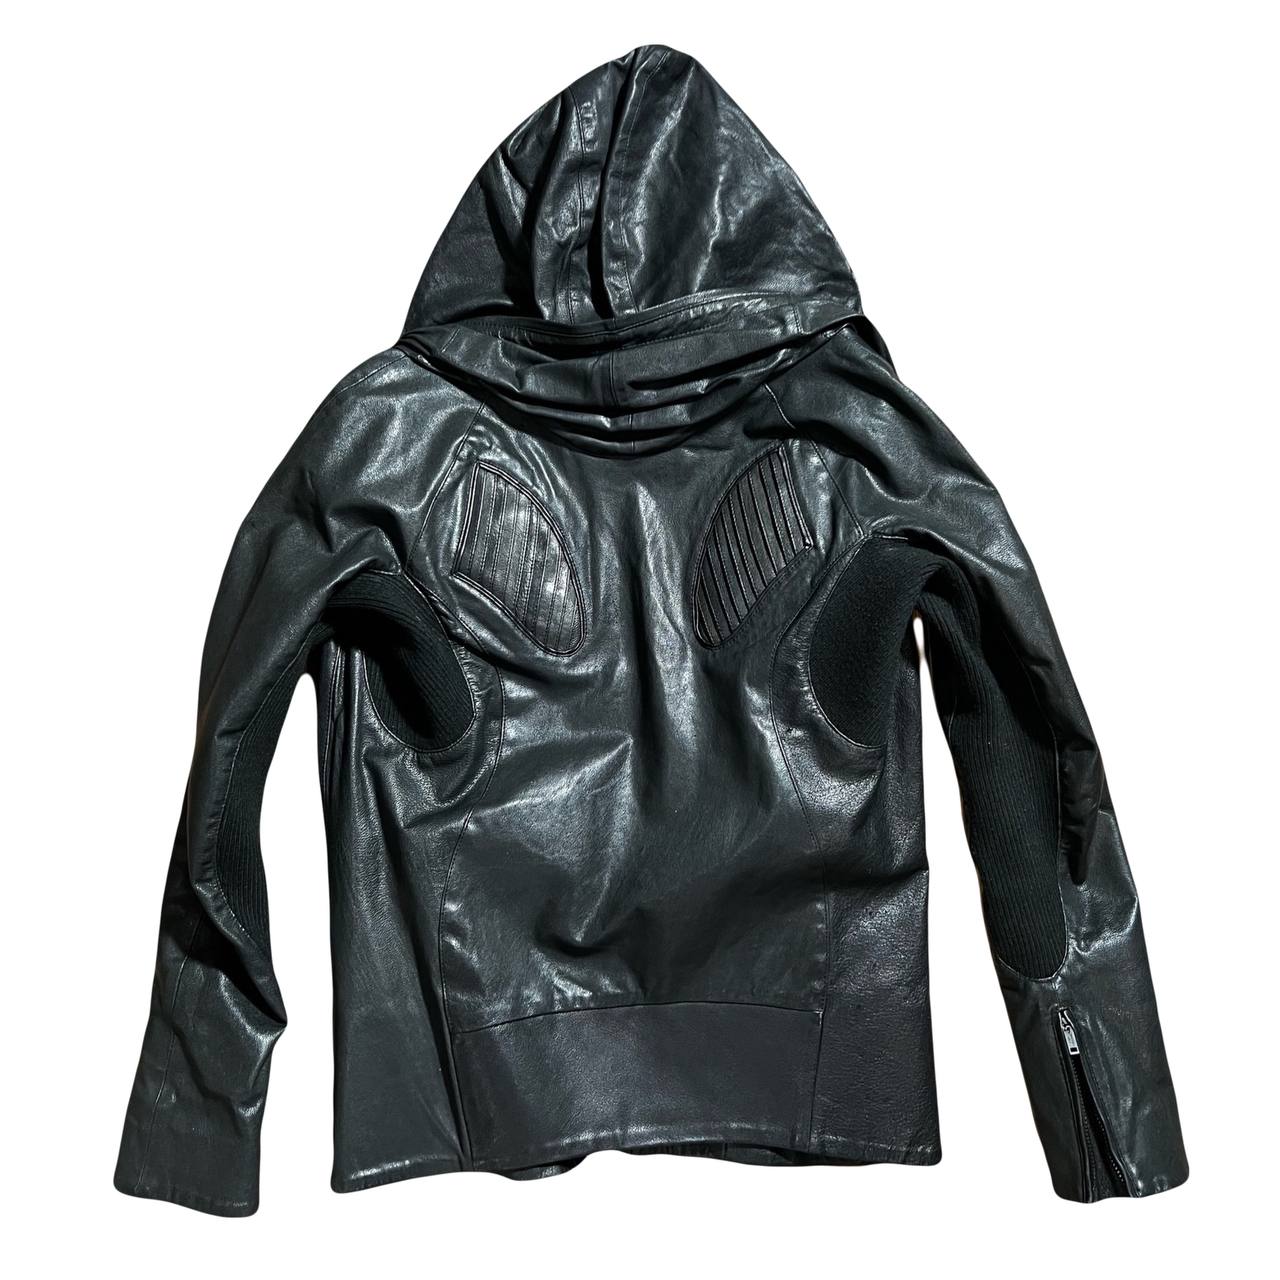 L.G.B “Bono Shark” Leather Jacket – Abb Market